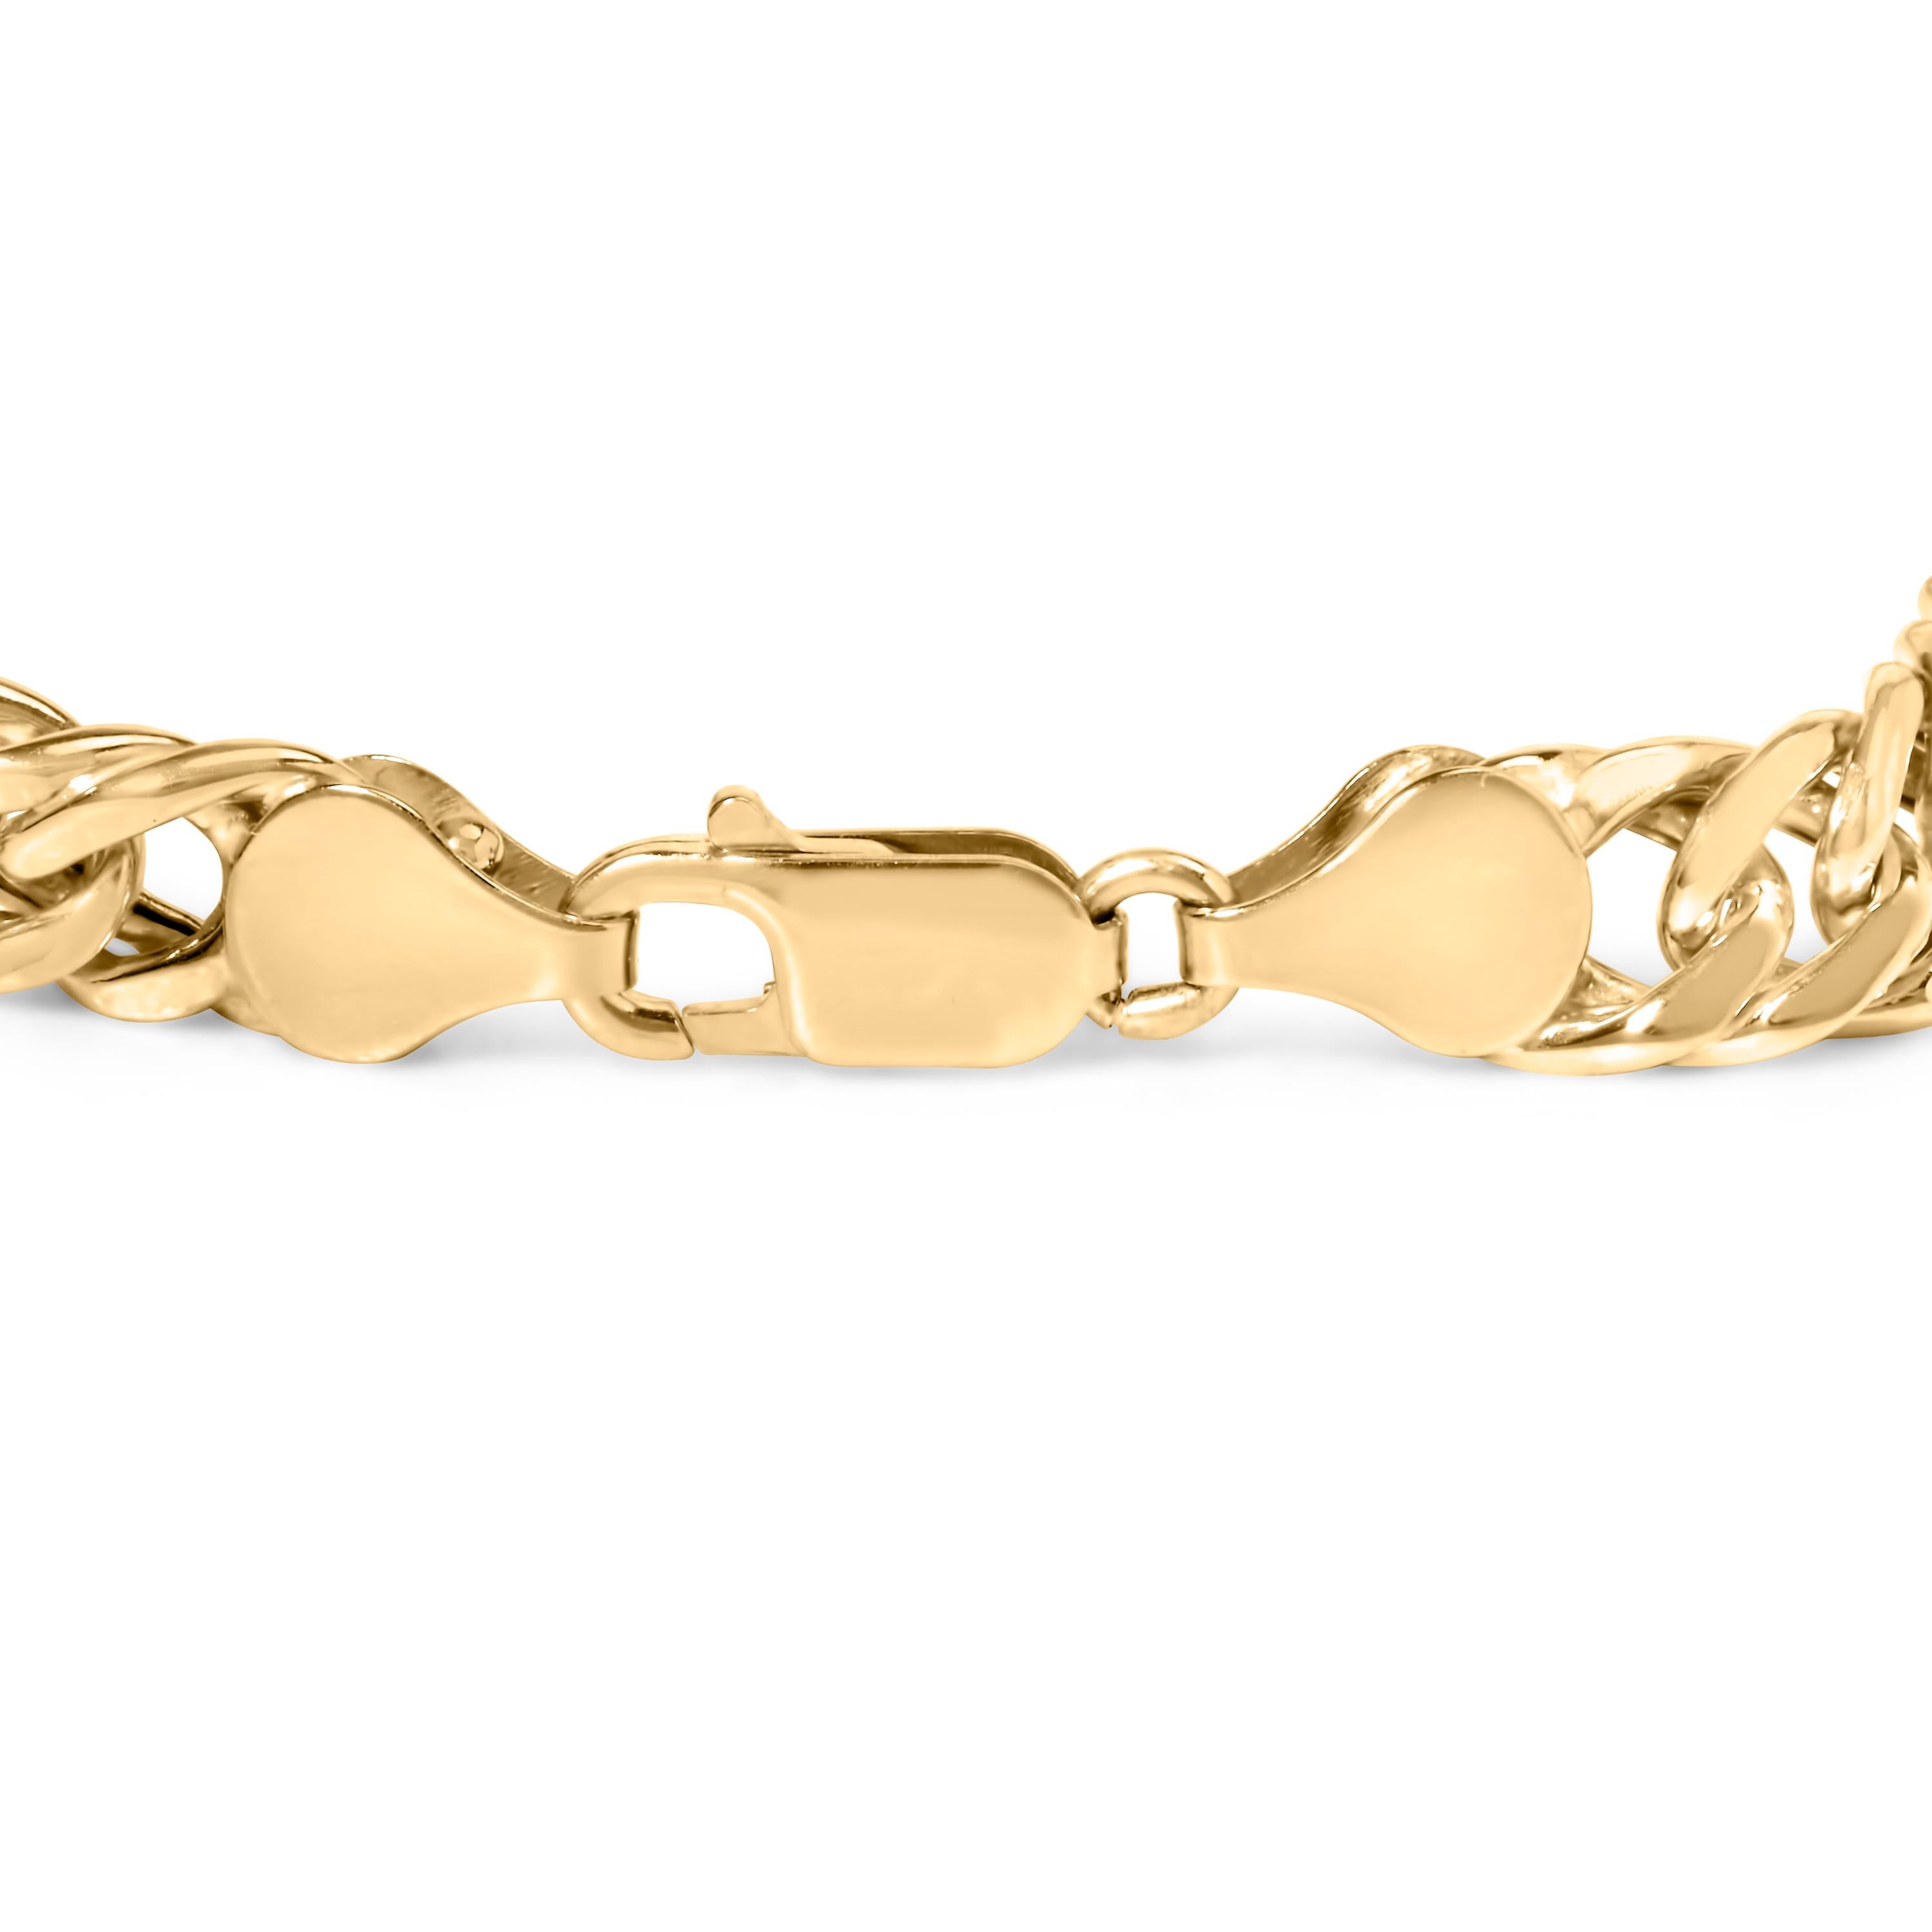 Gönnen Sie sich Luxus mit unserem exquisiten kubanischen Gliederarmband aus 10 Karat Gelbgold, einem zeitlosen Stück, das Eleganz und Raffinesse ausstrahlt. Dieses Armband aus glänzendem 10-karätigem Gelbgold ist ein Statement für raffinierten Stil